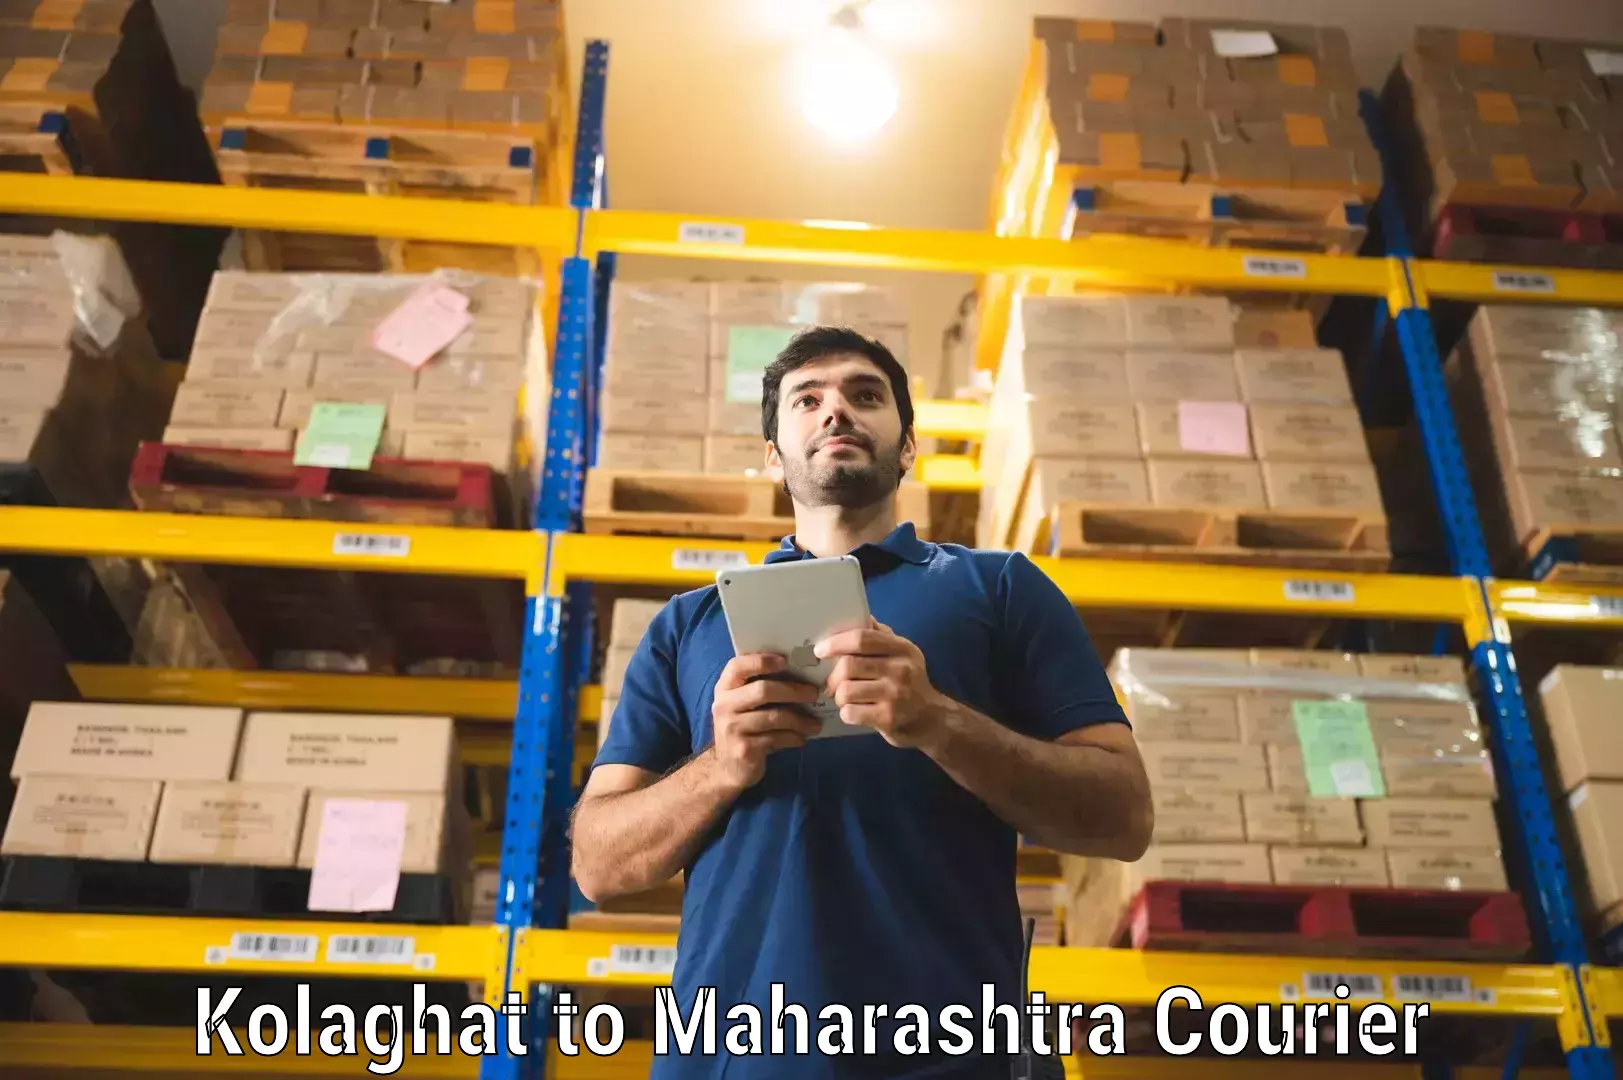 Efficient parcel service Kolaghat to Parbhani